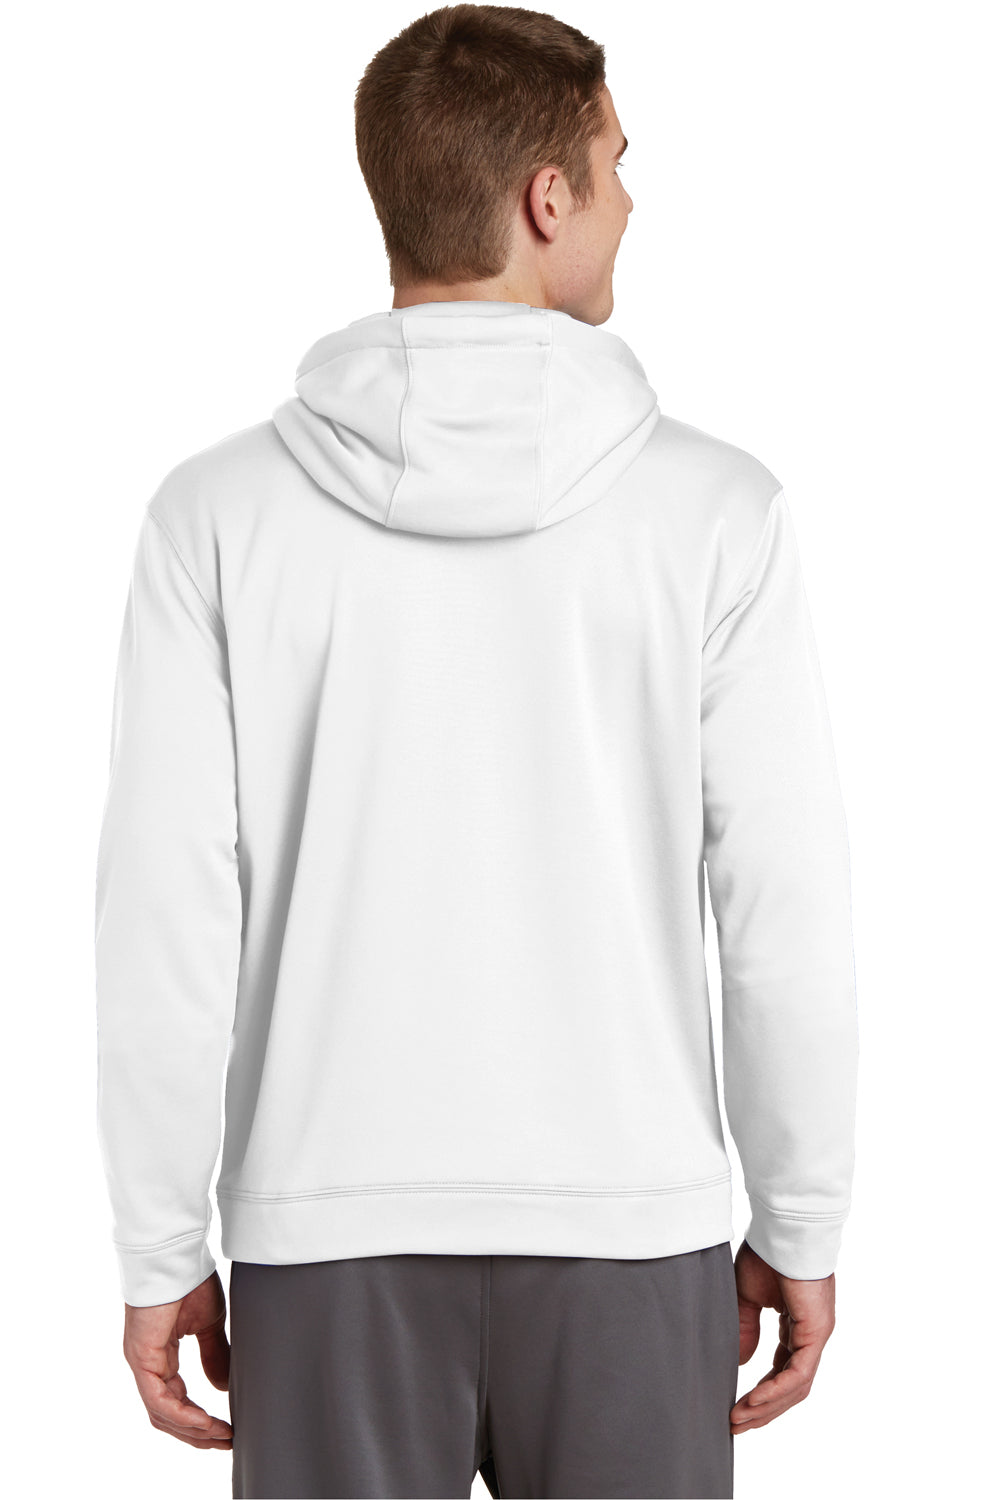 Sport-Tek F244 Mens Sport-Wick Moisture Wicking Fleece Hooded Sweatshirt Hoodie White Back